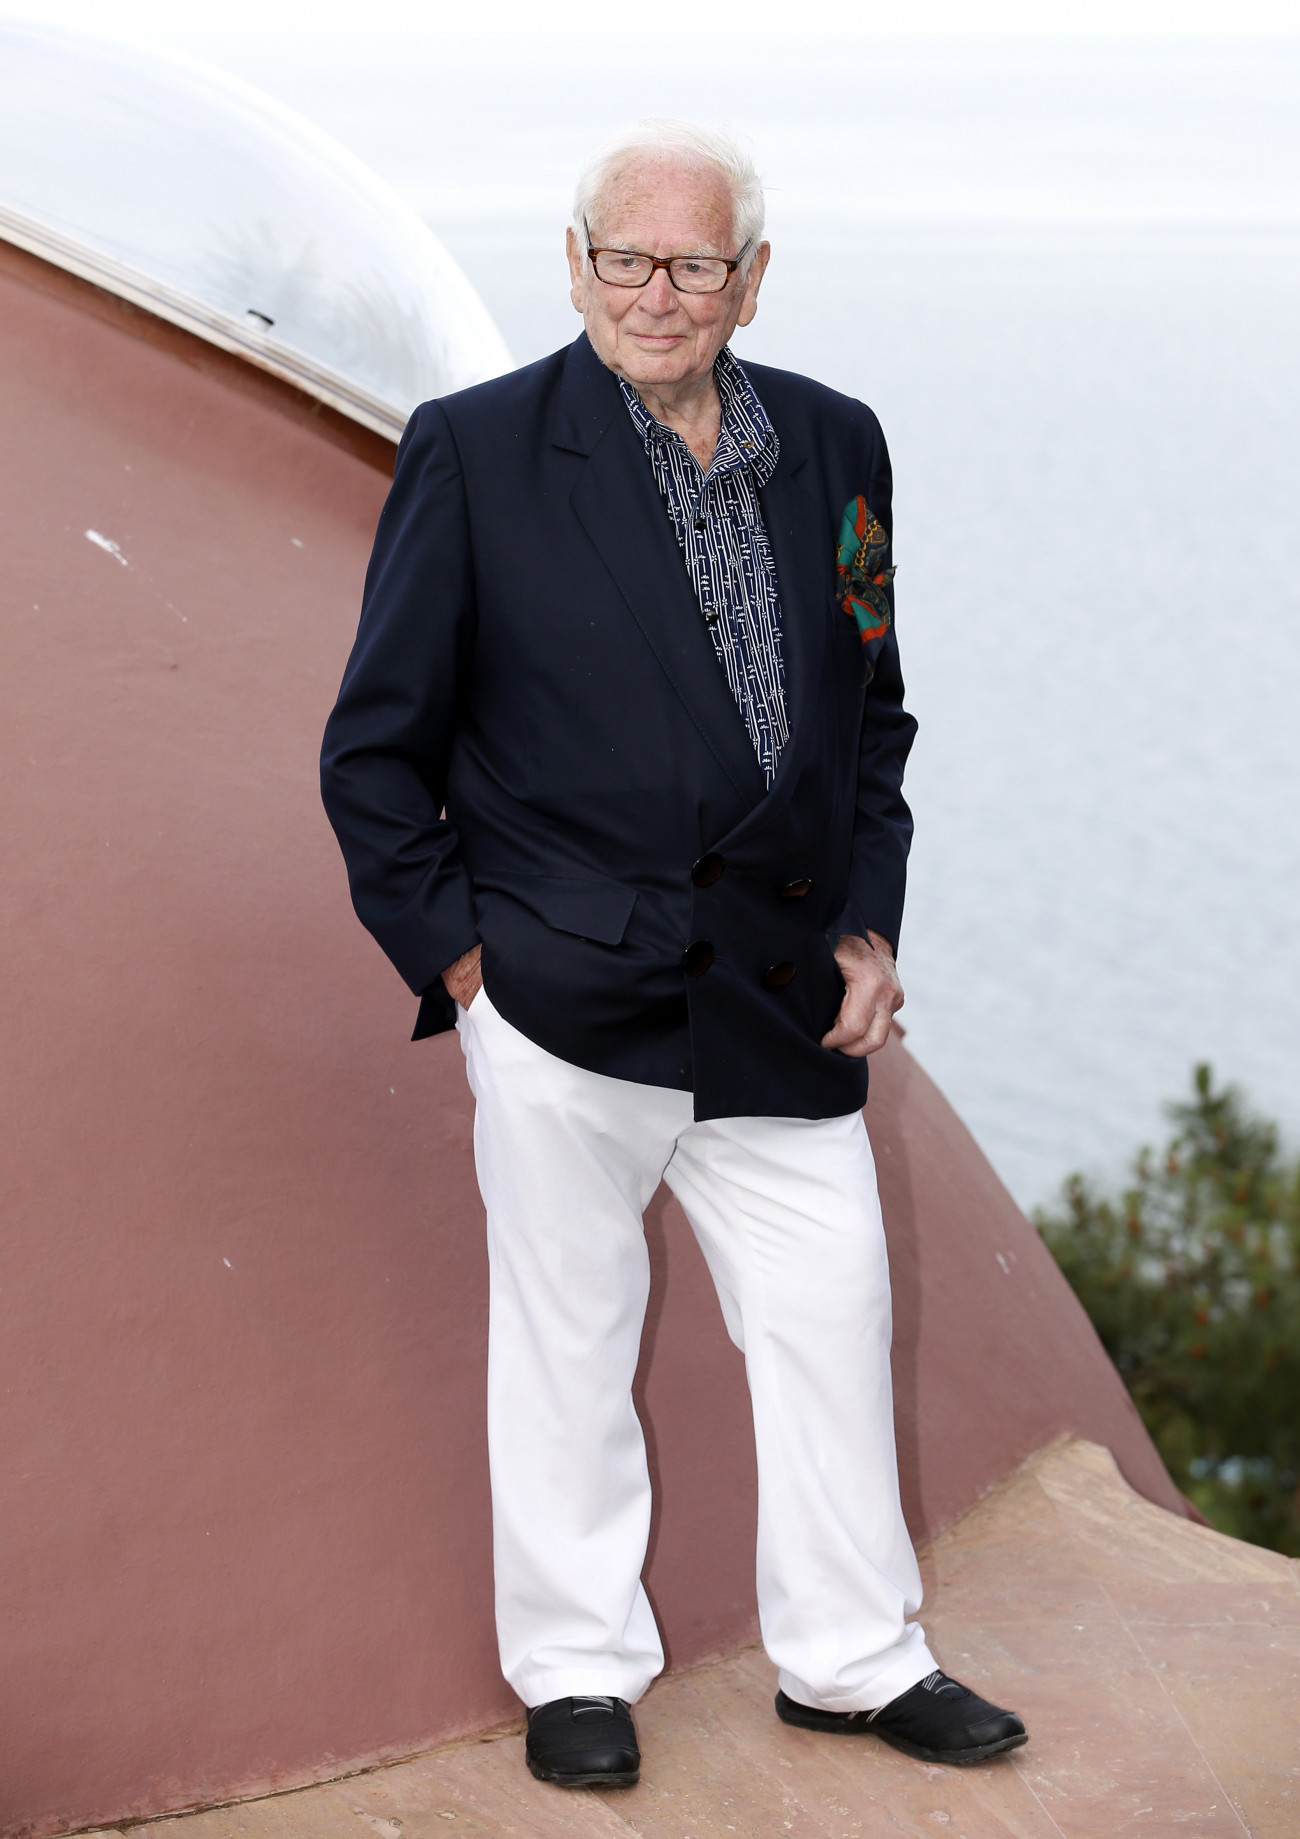 Theoule Sur Mer, 2020. december 29.
2015. május 11-én a franciaországi Theoule Sur Merben készített kép Pierre Cardin francia divattervezőről. Az avantgárd divattervezőt, az első pret-a-porter ruhadarabok készítőjét 2020. december 29-én, 98 évesen érte a halál kedden a párizsi melletti neuilly-i amerikai kórházban.
MTI/EPA/Sebastien Nogier